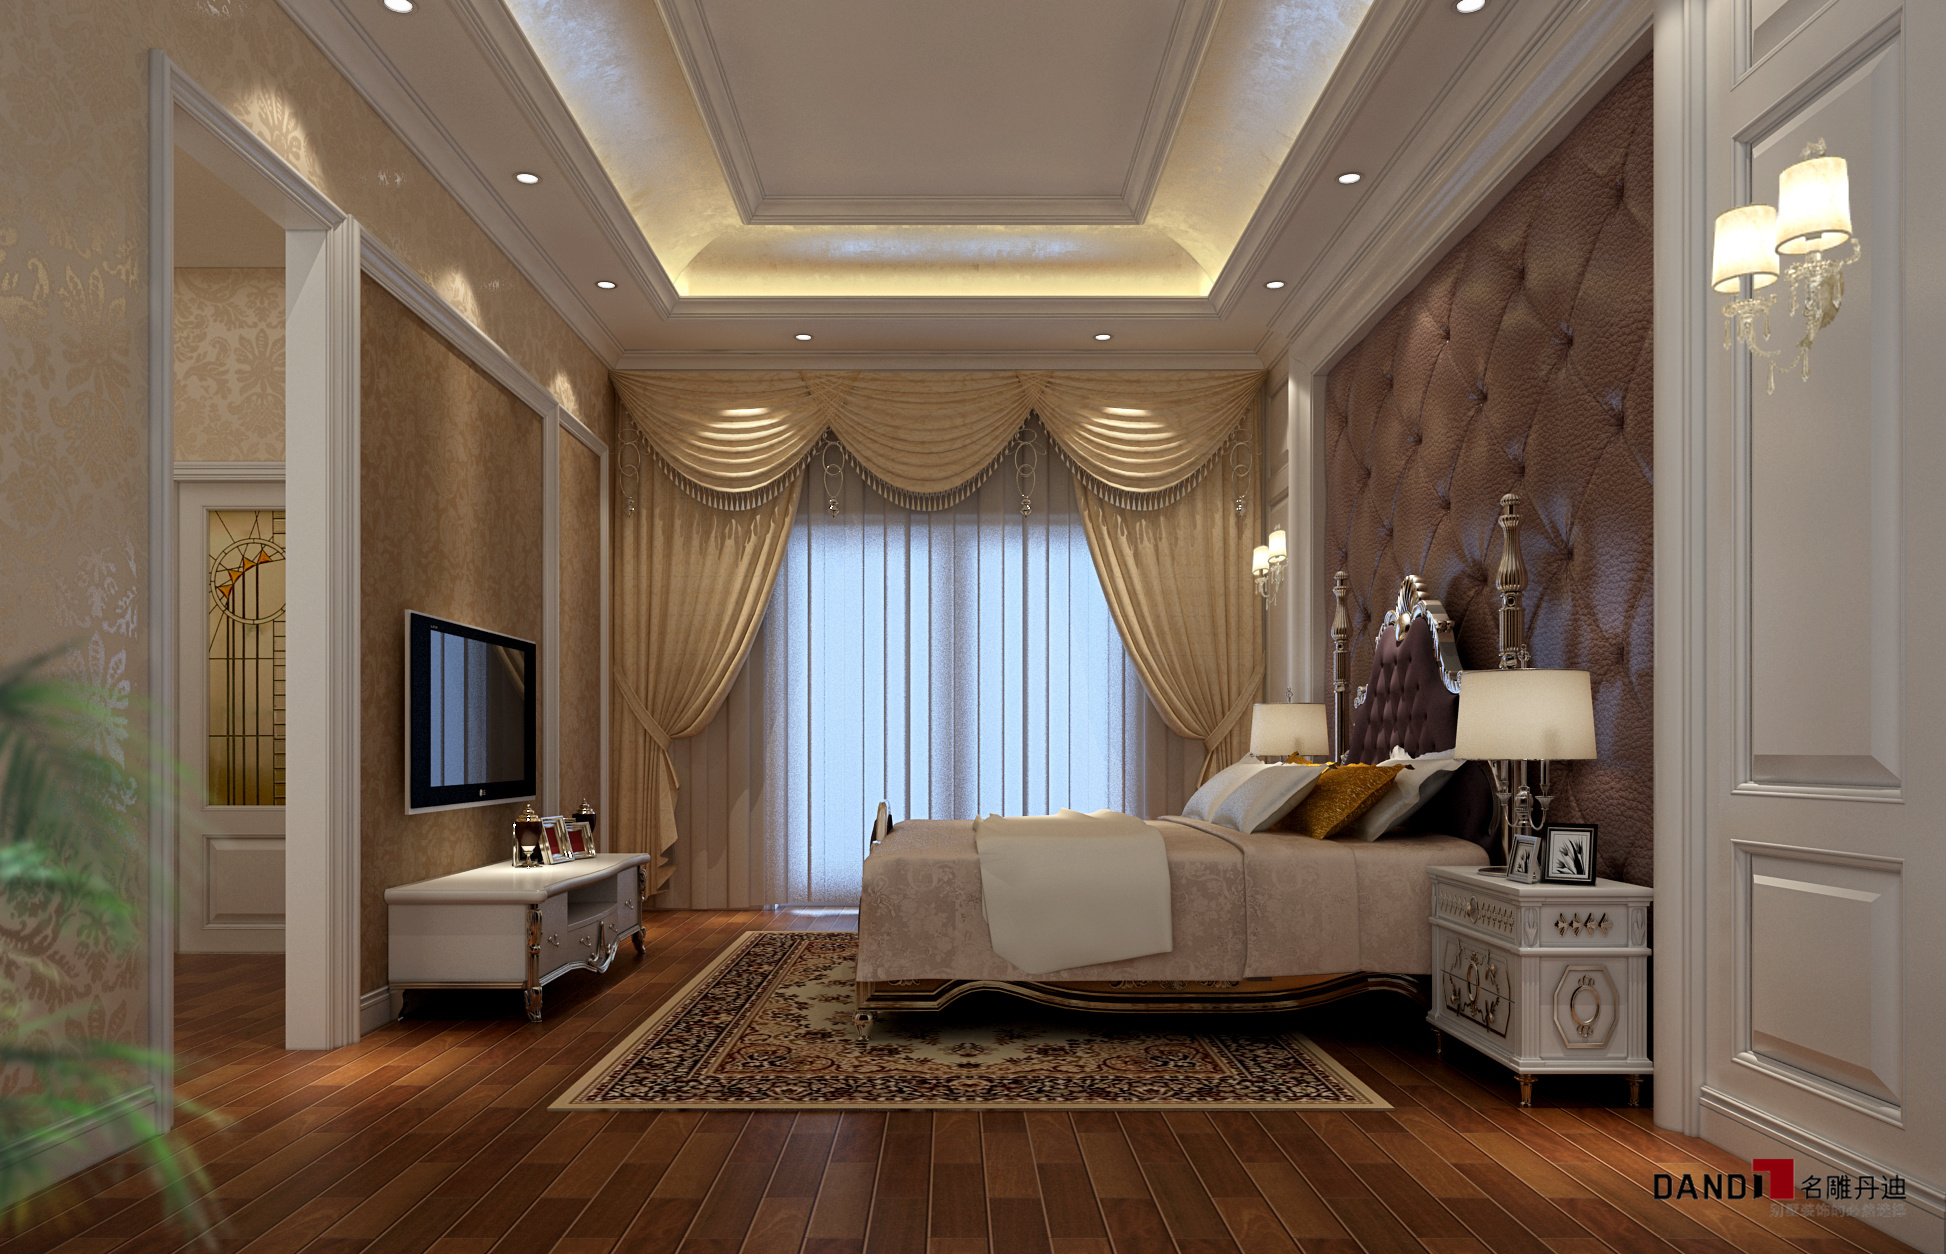 欧式 别墅 高富帅 名雕丹迪 奢华 卧室 卧室图片来自名雕丹迪在欧式风格—300平奢华别墅装修的分享